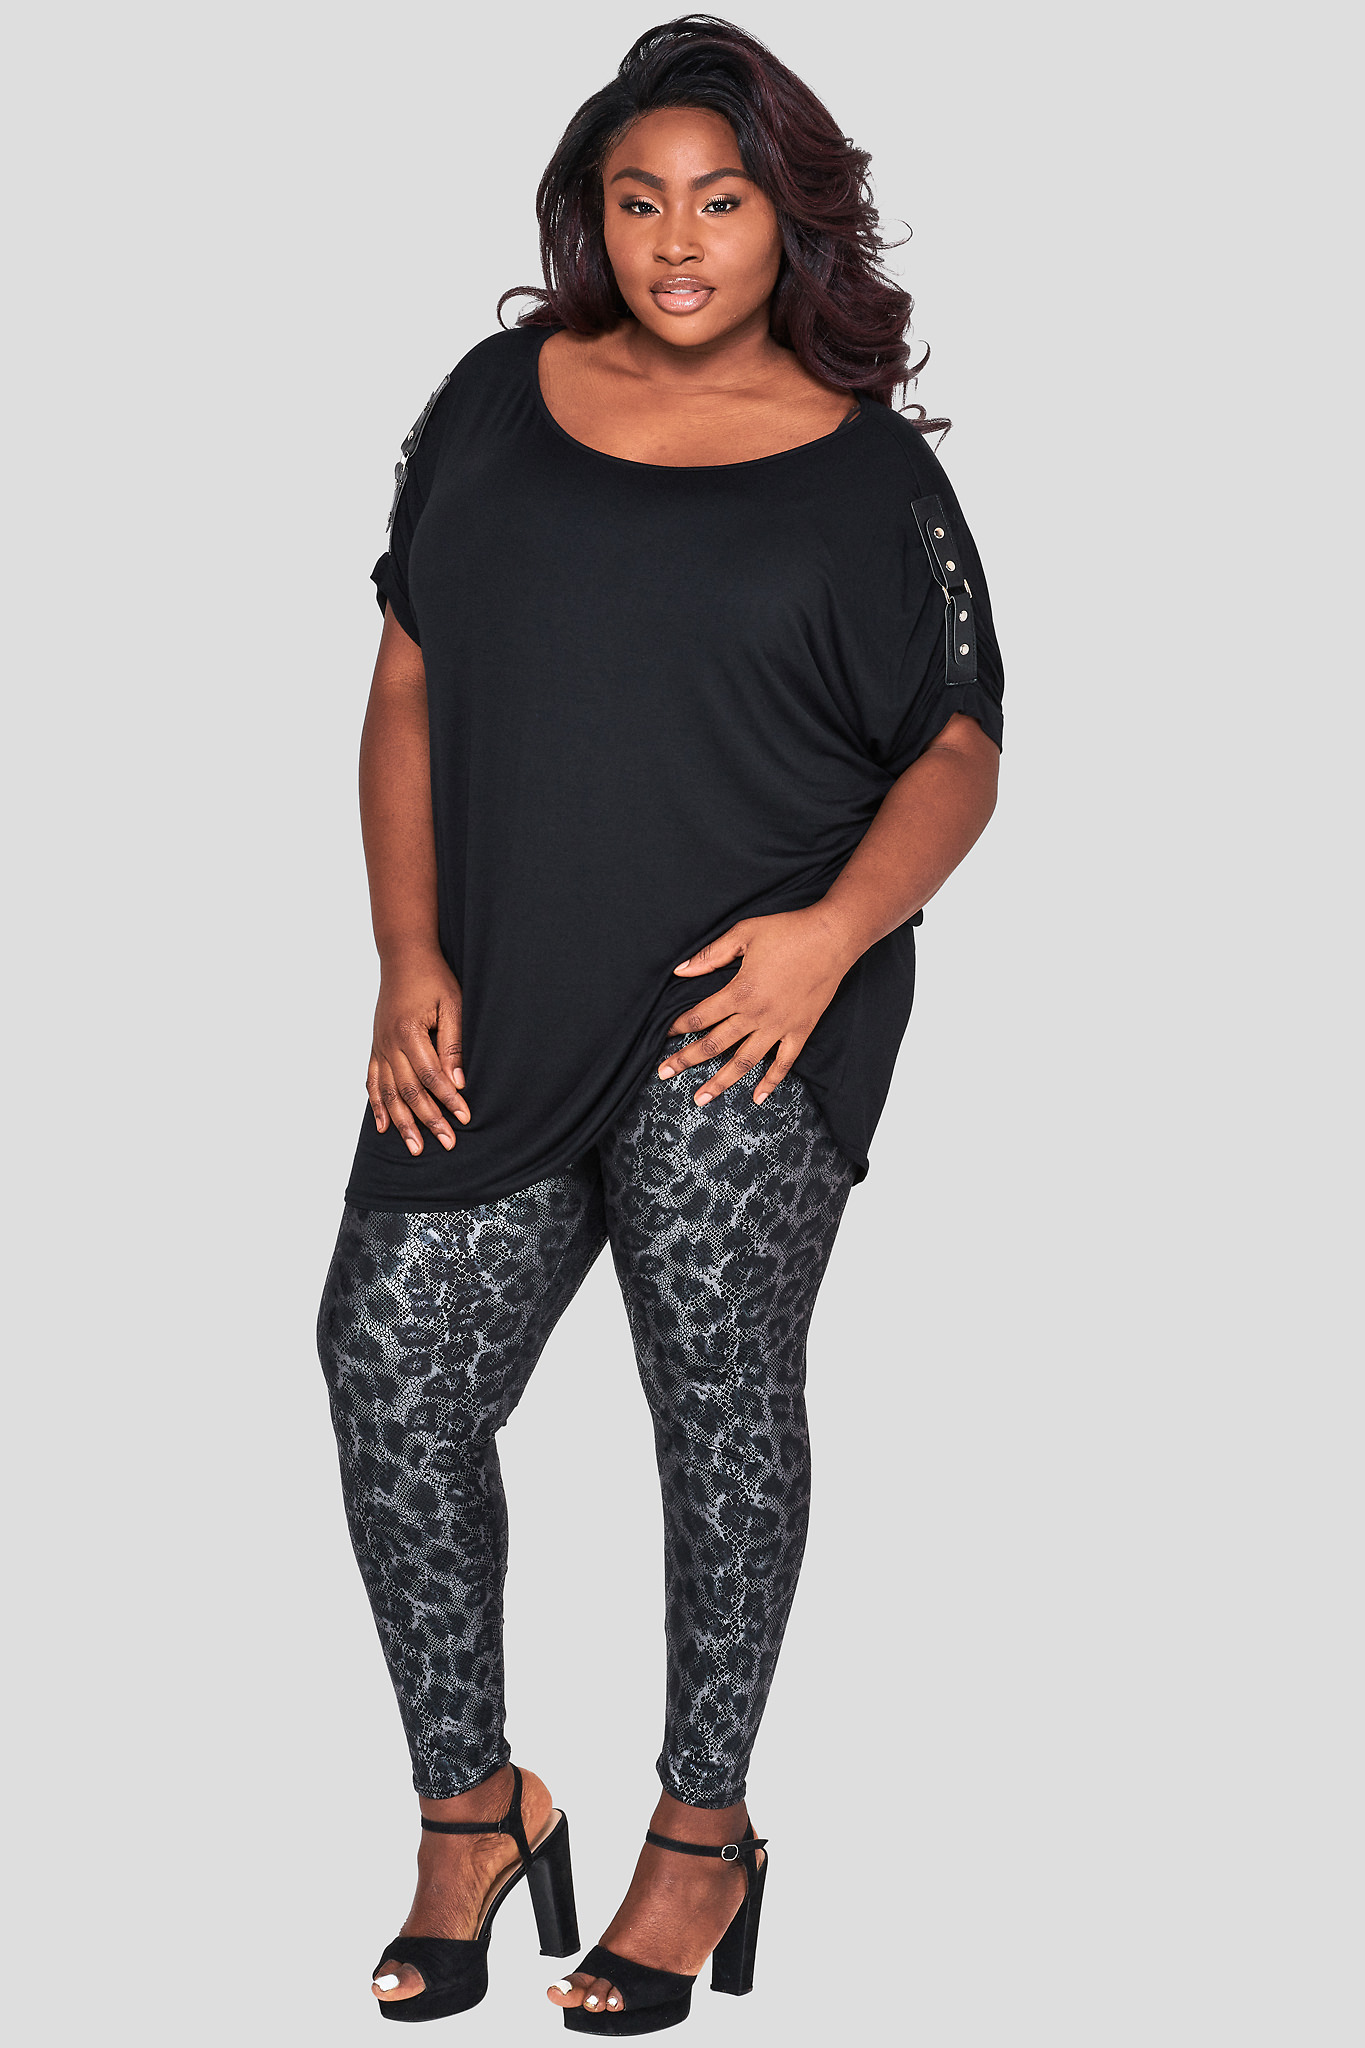 https://fashion-book.com/wp-content/uploads/2022/07/black-leopard-print-plus-size-leggings-fashion-book-wholesale.jpg